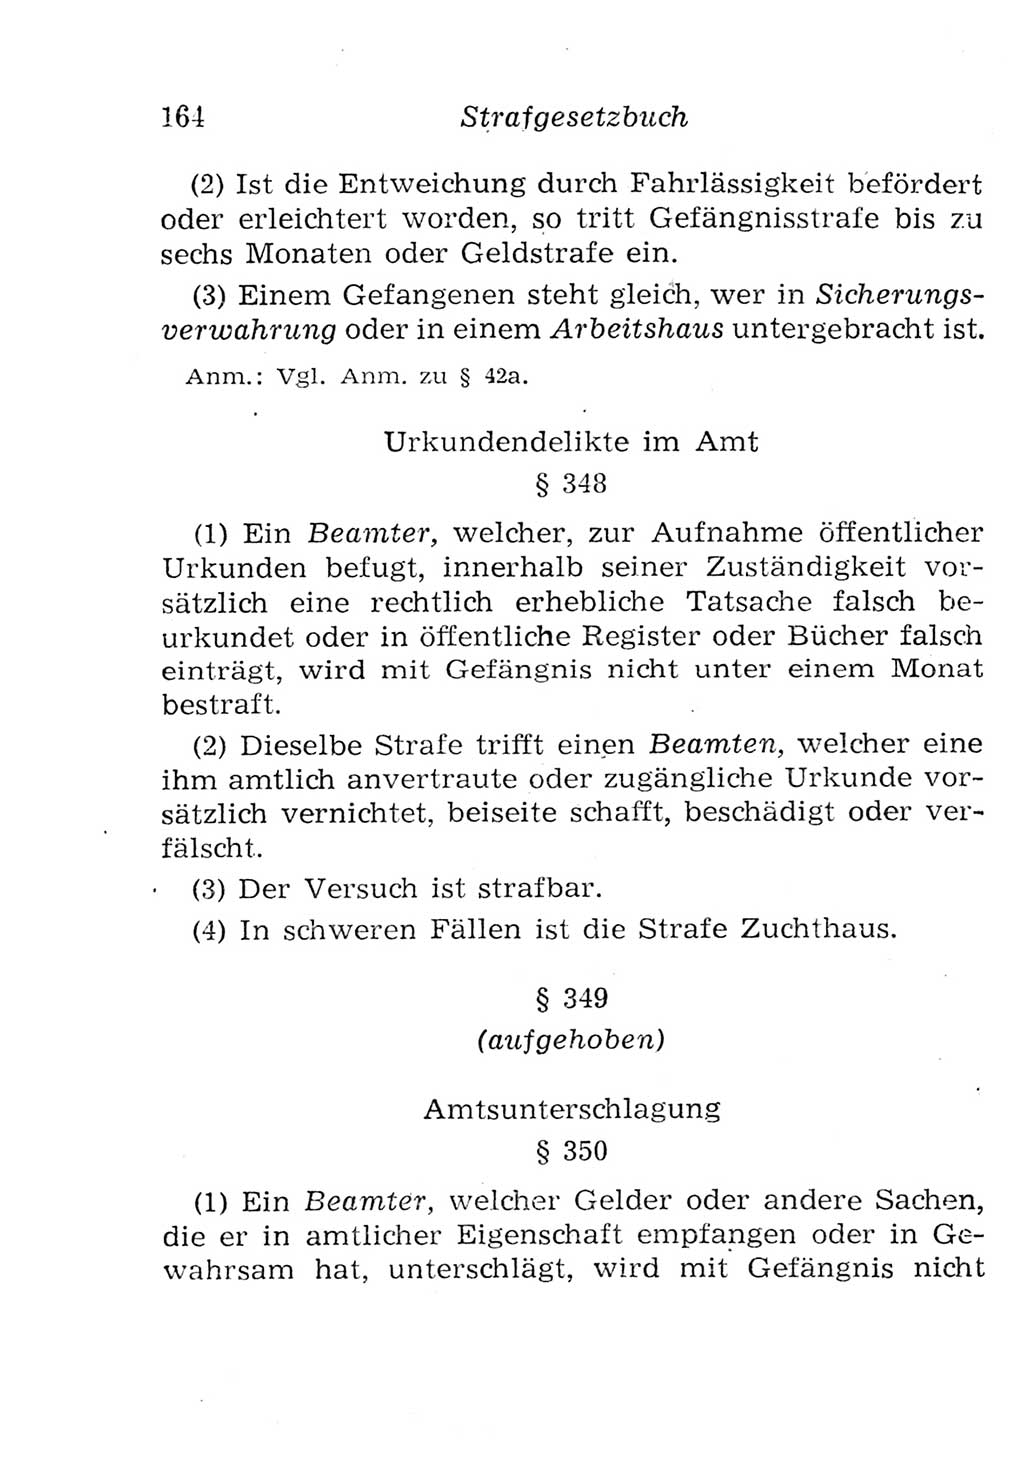 Strafgesetzbuch (StGB) und andere Strafgesetze [Deutsche Demokratische Republik (DDR)] 1957, Seite 164 (StGB Strafges. DDR 1957, S. 164)